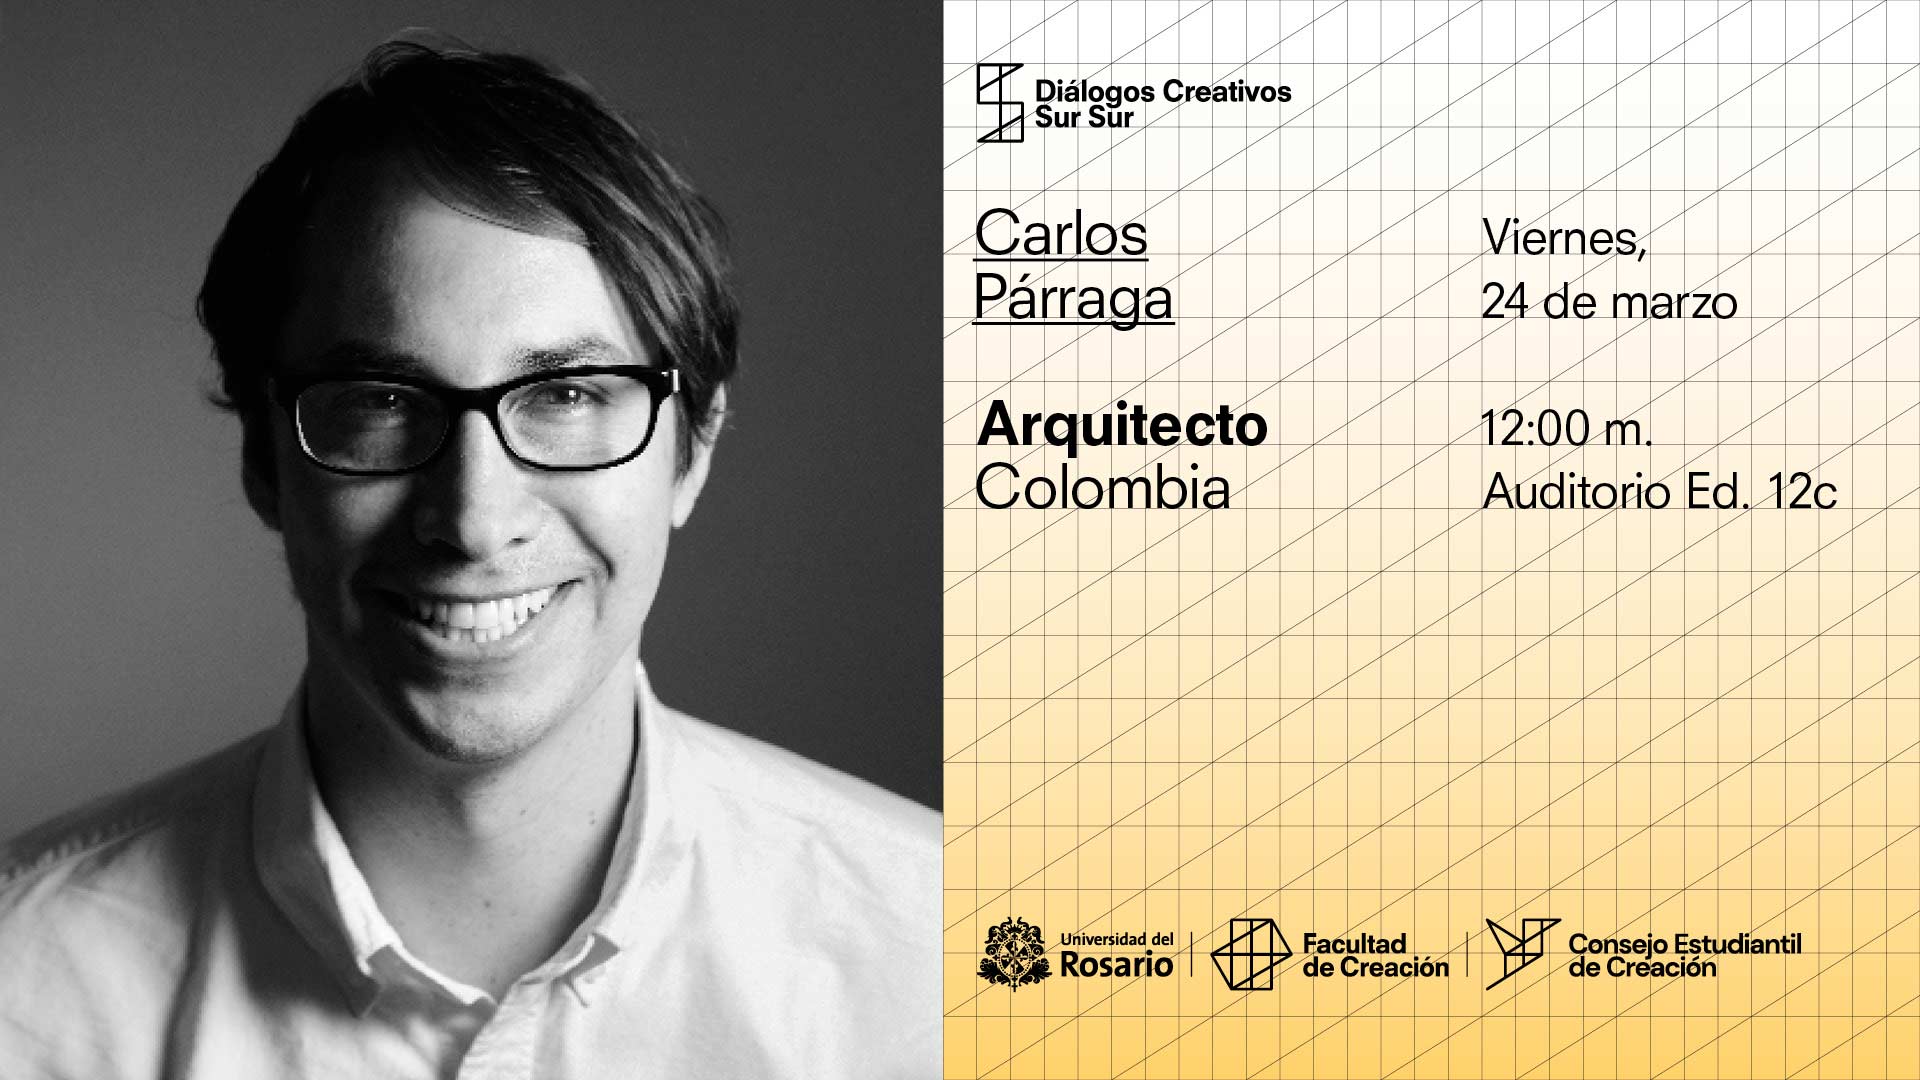 Diálogos Creativos Sur Sur: Carlos Párraga, Colombia